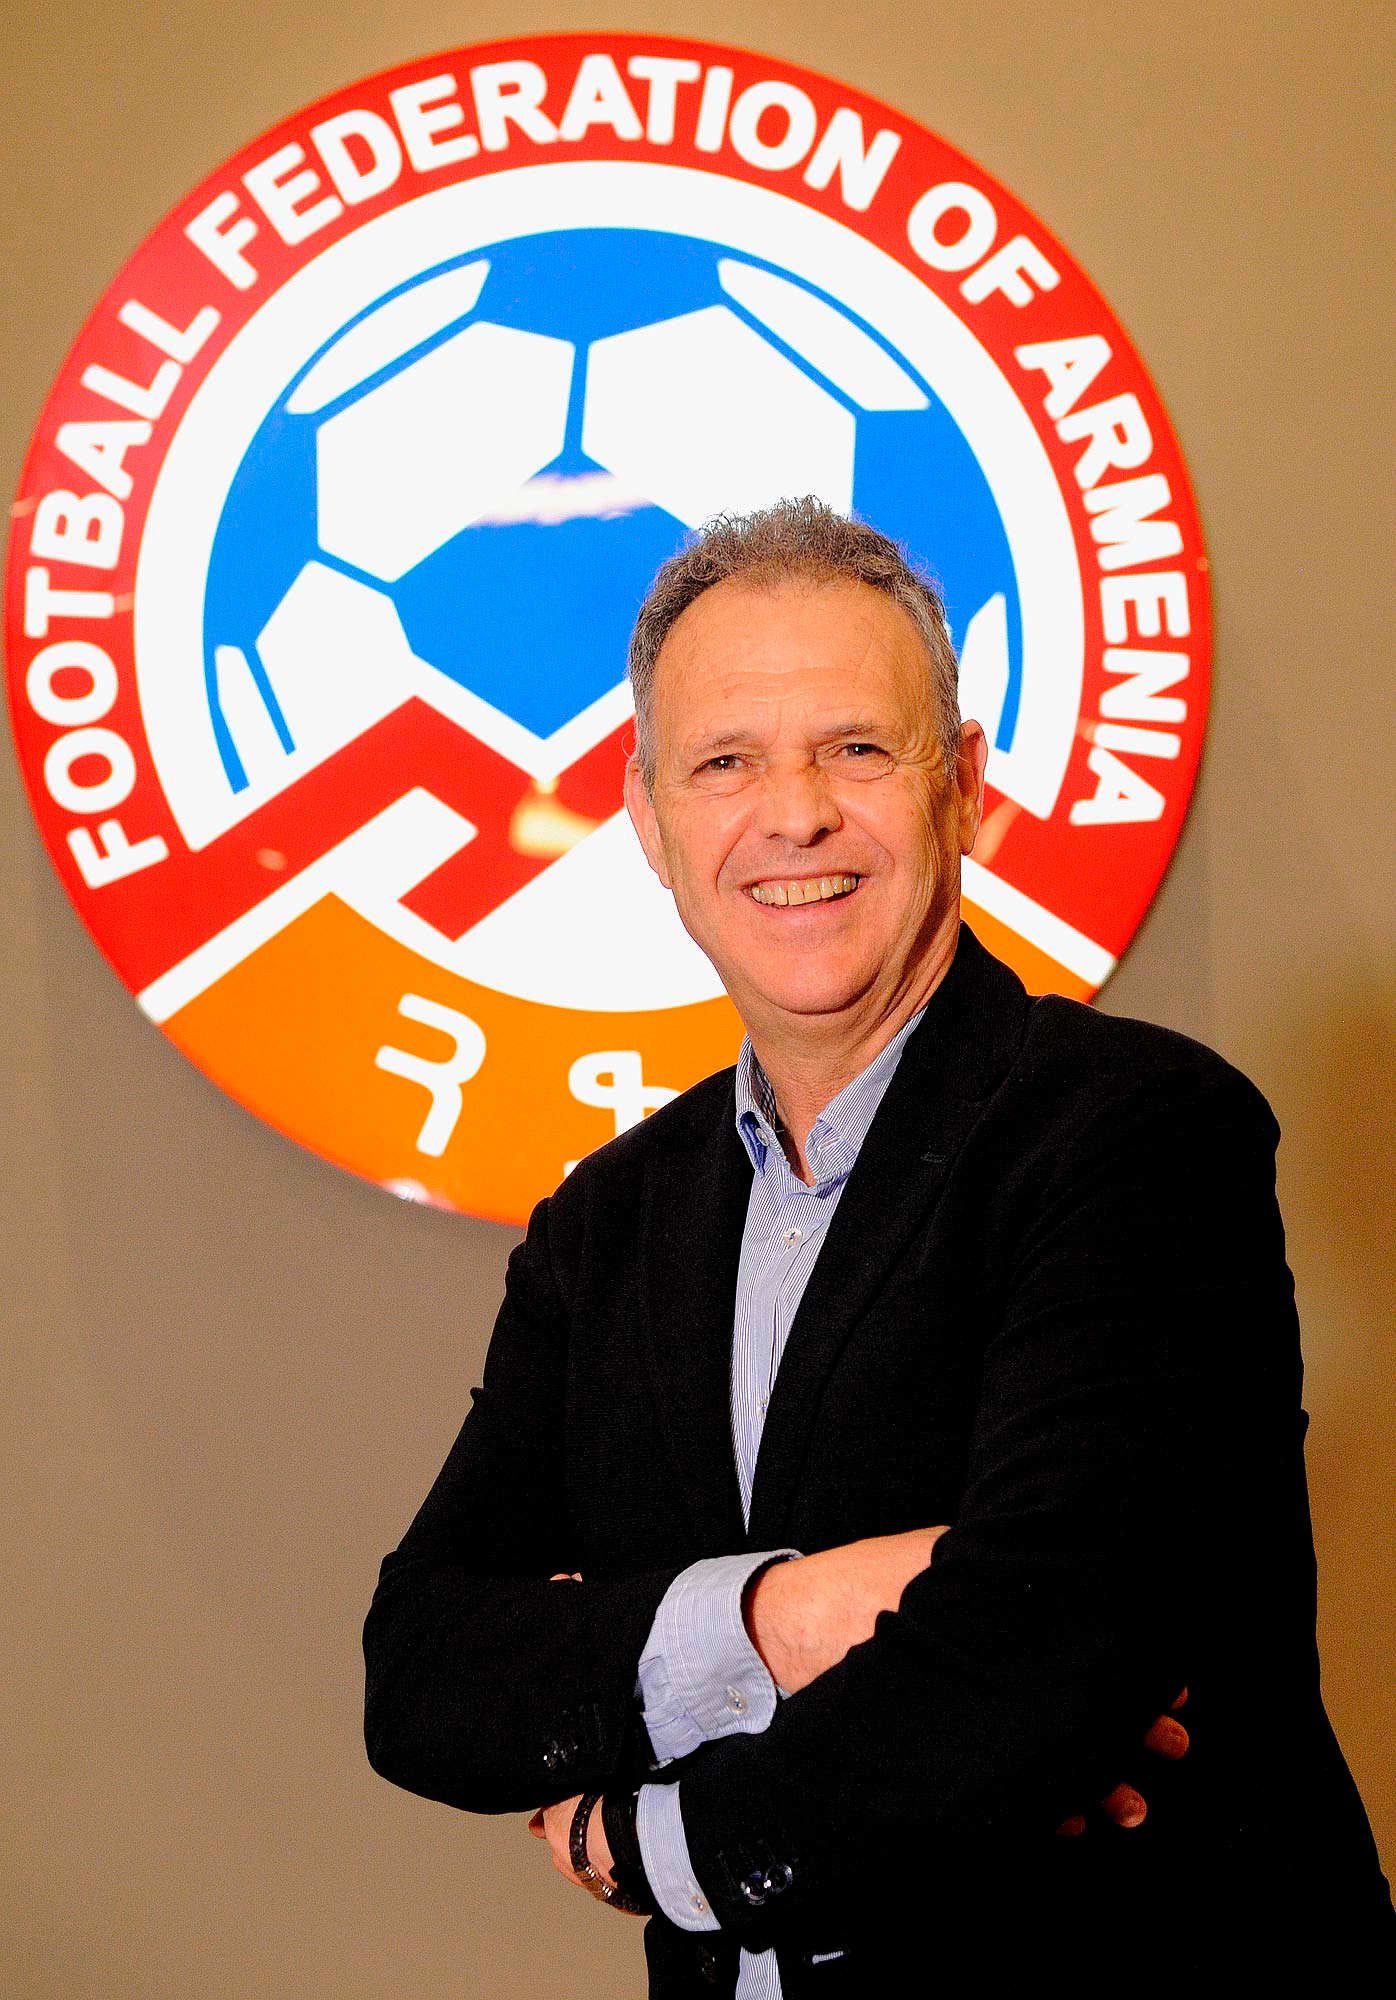 Armenian national soccer team has new head coach